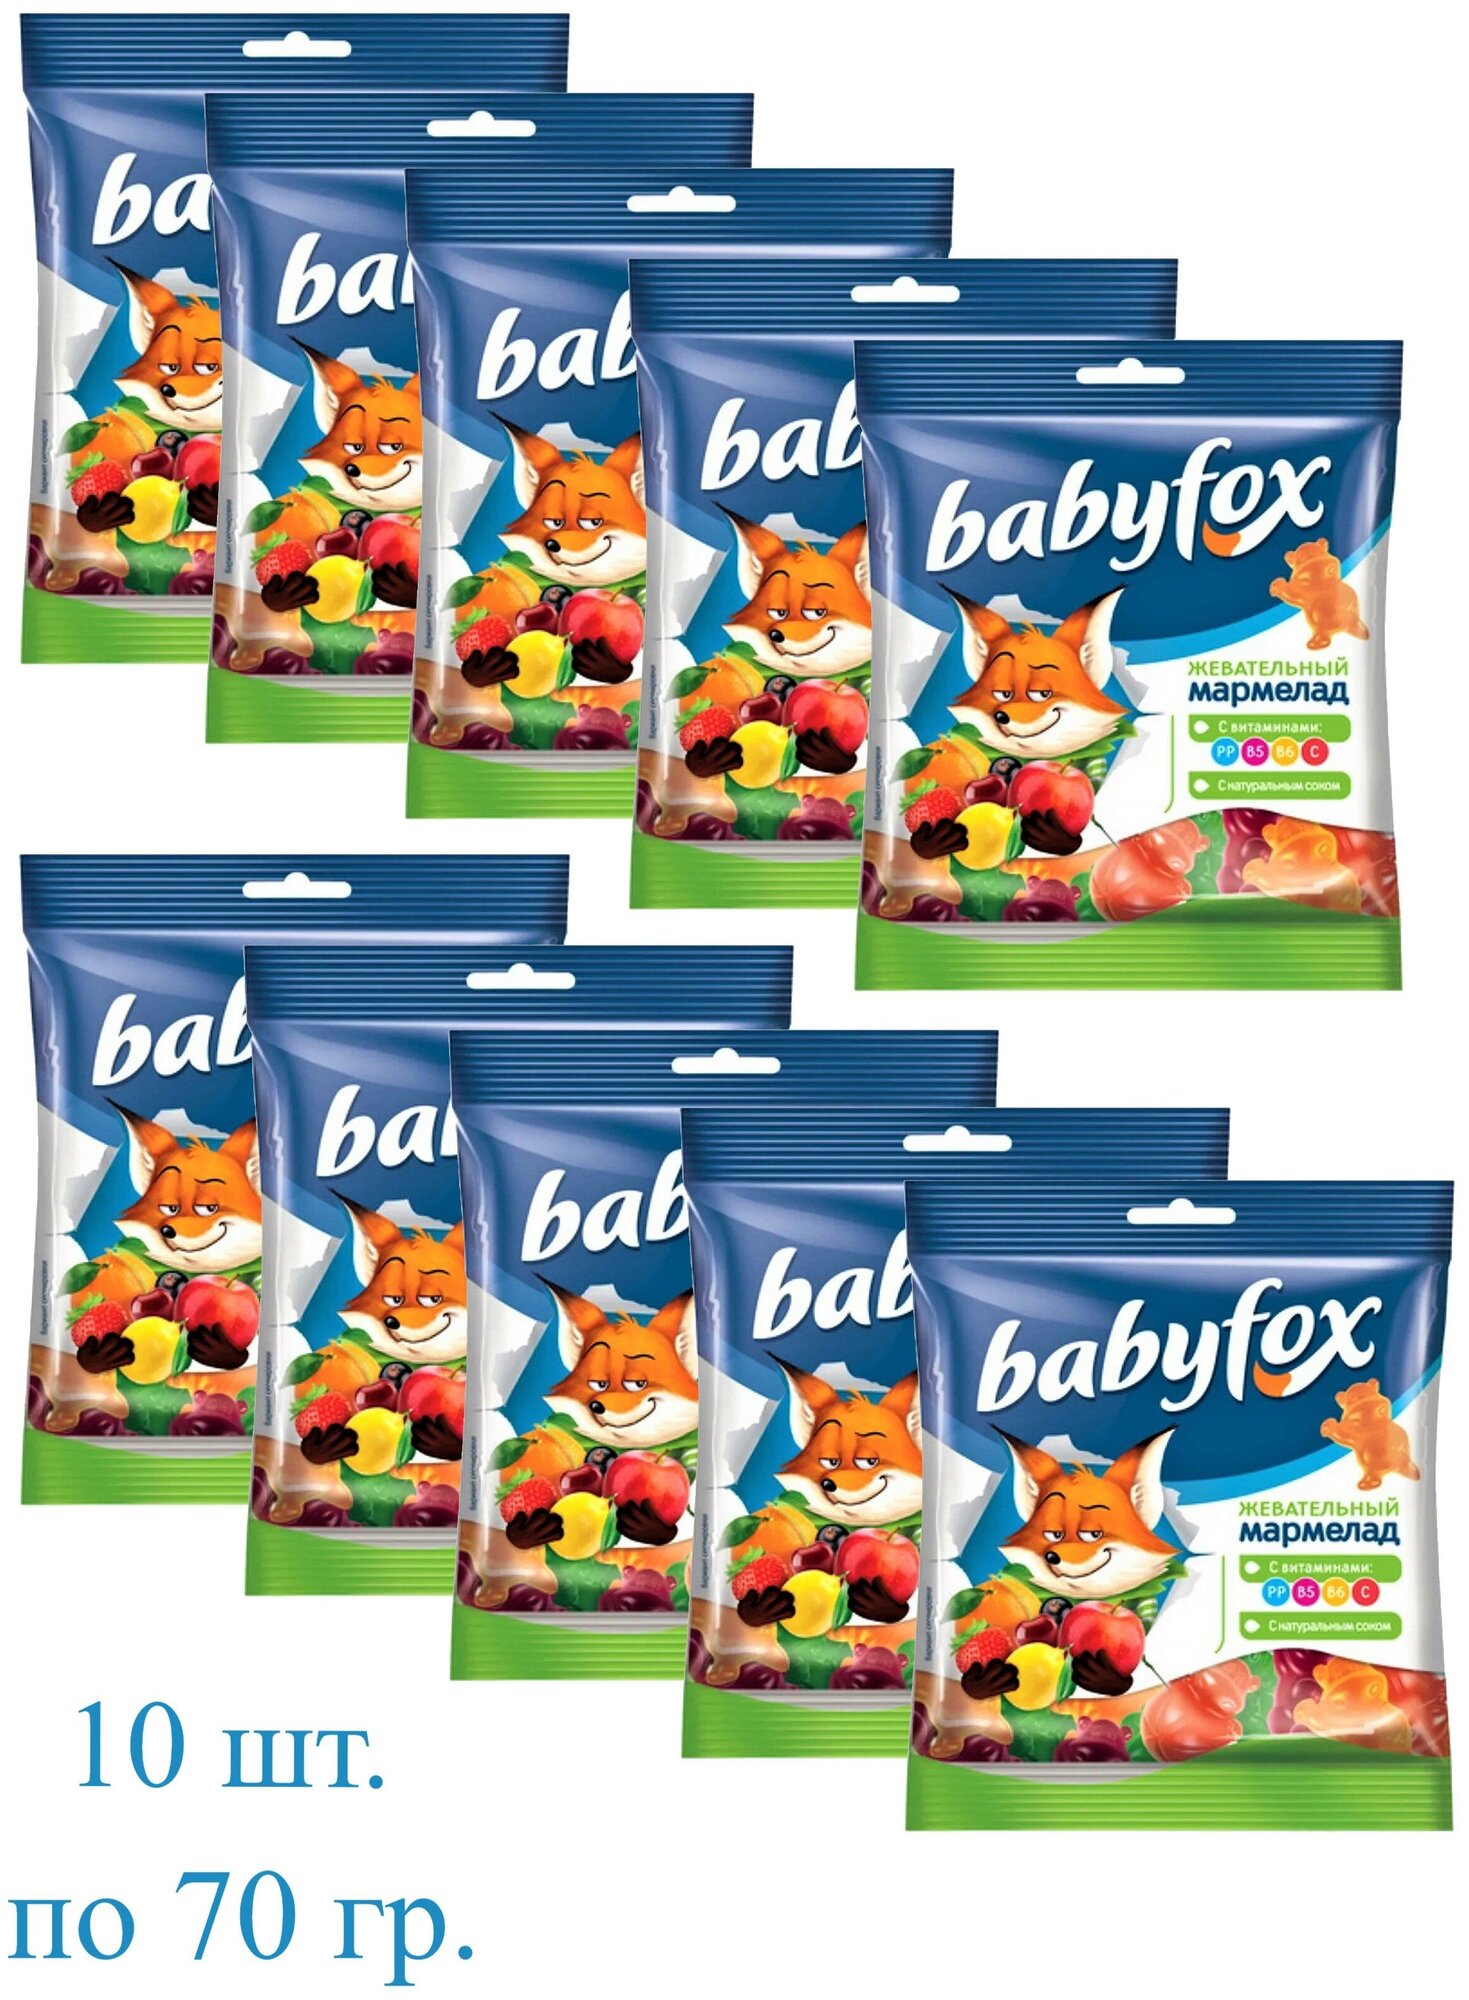 Мармелад KDV BabyFox жевательный с соком ягод и фруктовa в форме бегемотов (10 шт. по 70 грамм)